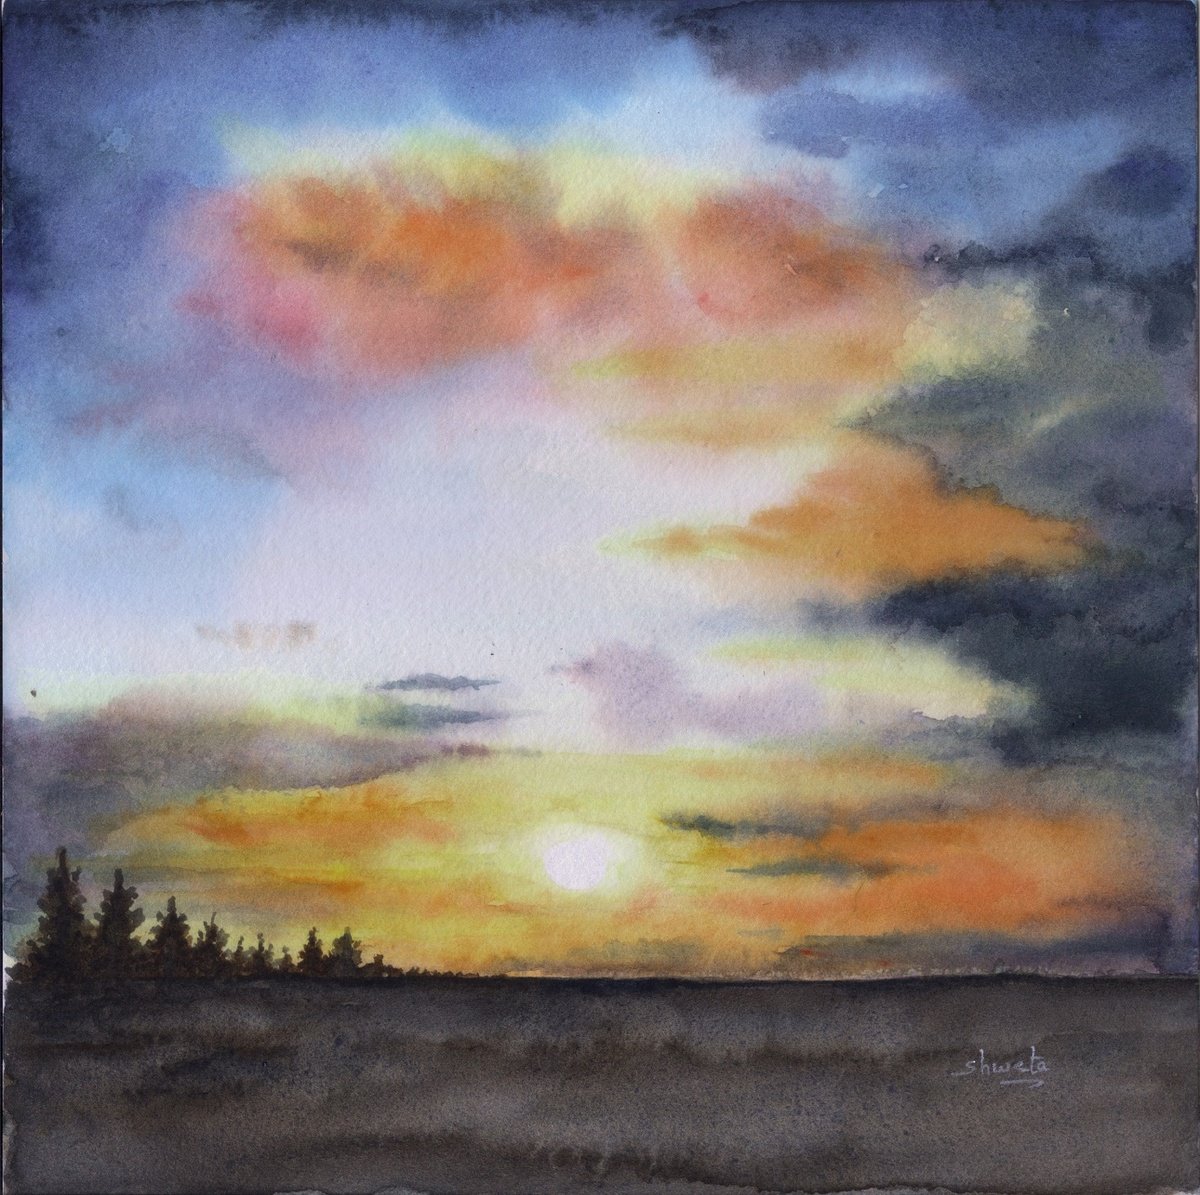 Sunset watercolour painting by Shweta Mahajan